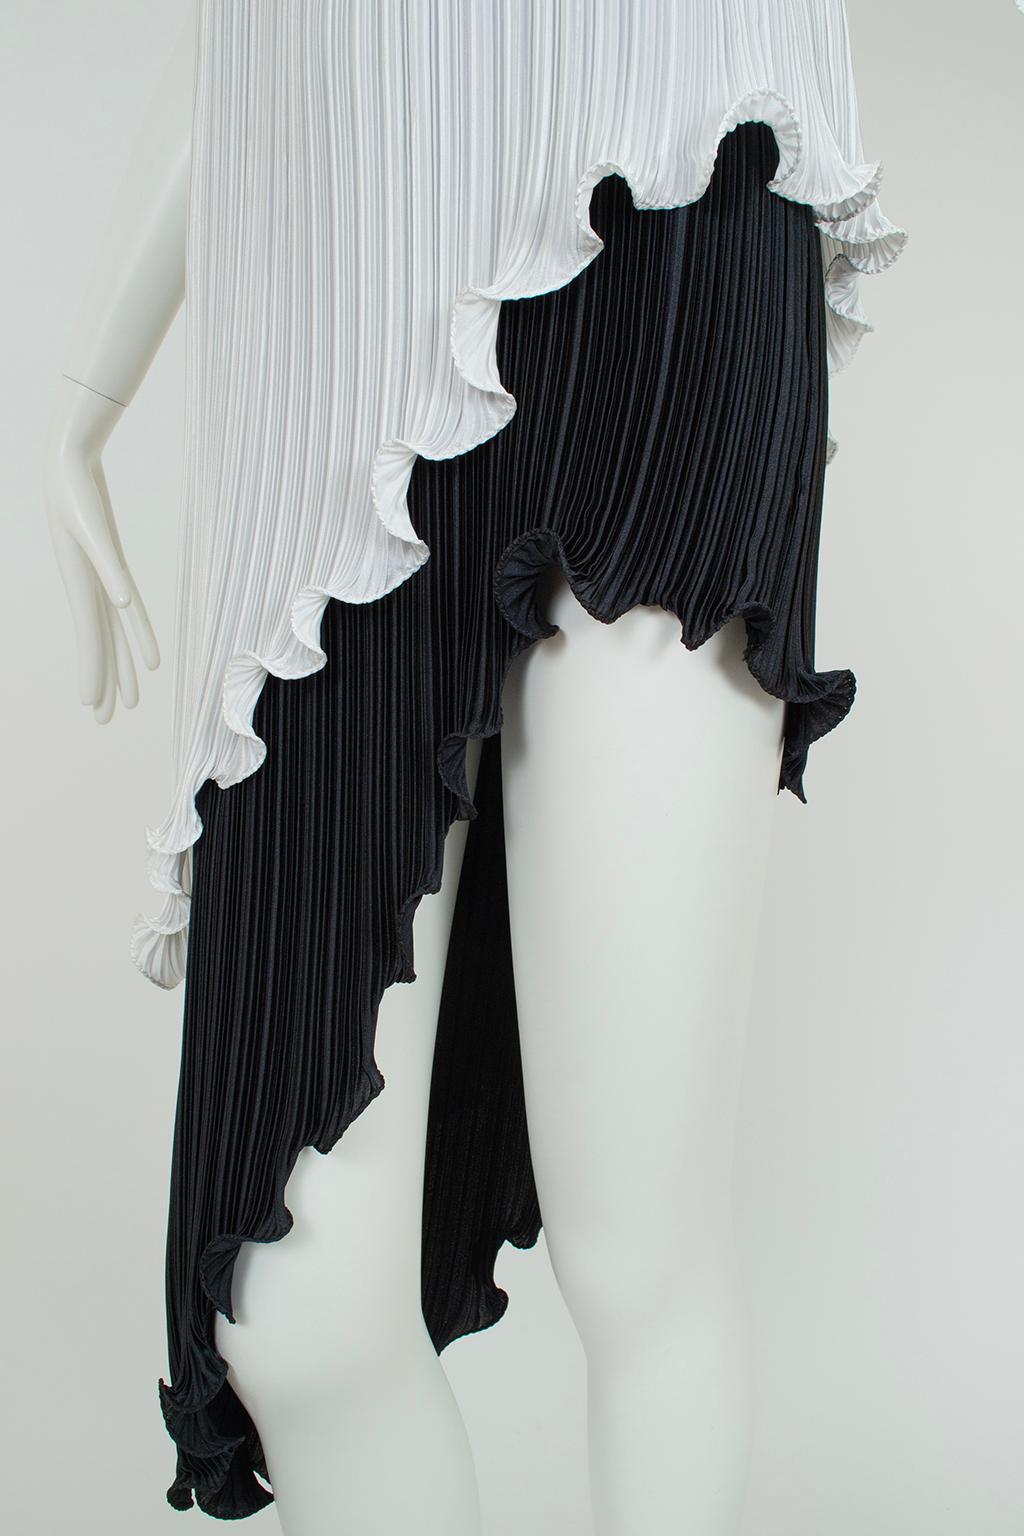 New Tarquin Ebker Black White Asymmetrical Delphos Dress w Provenance – S, 1978 For Sale 7